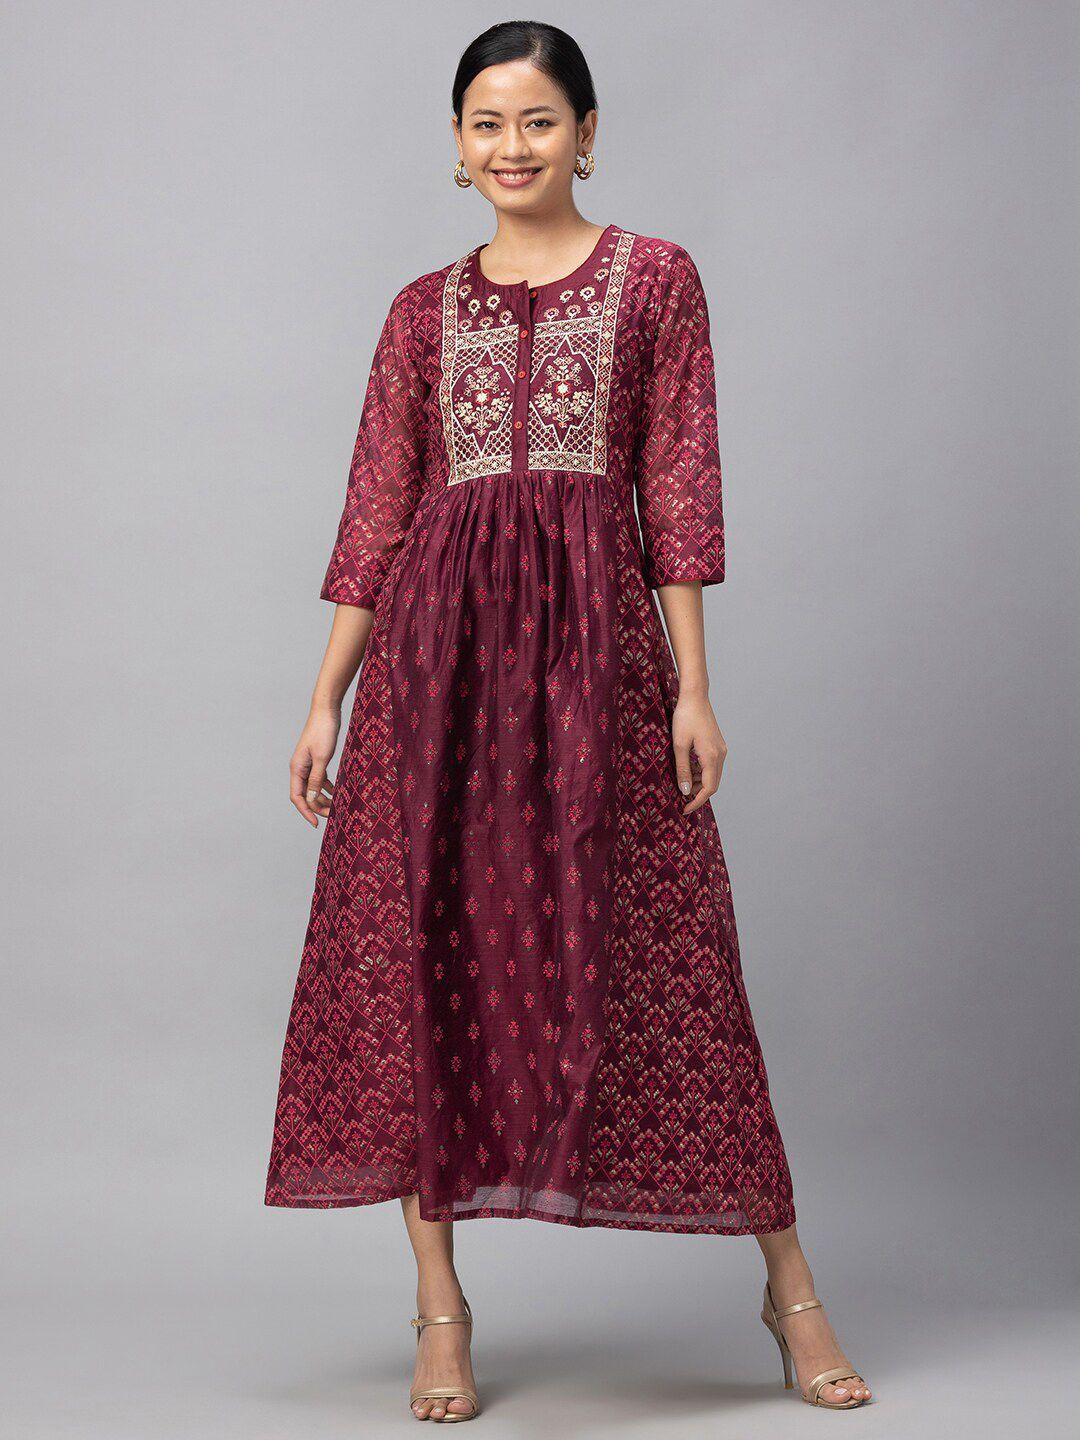 globus burgundy ethnic motifs ethnic maxi dress